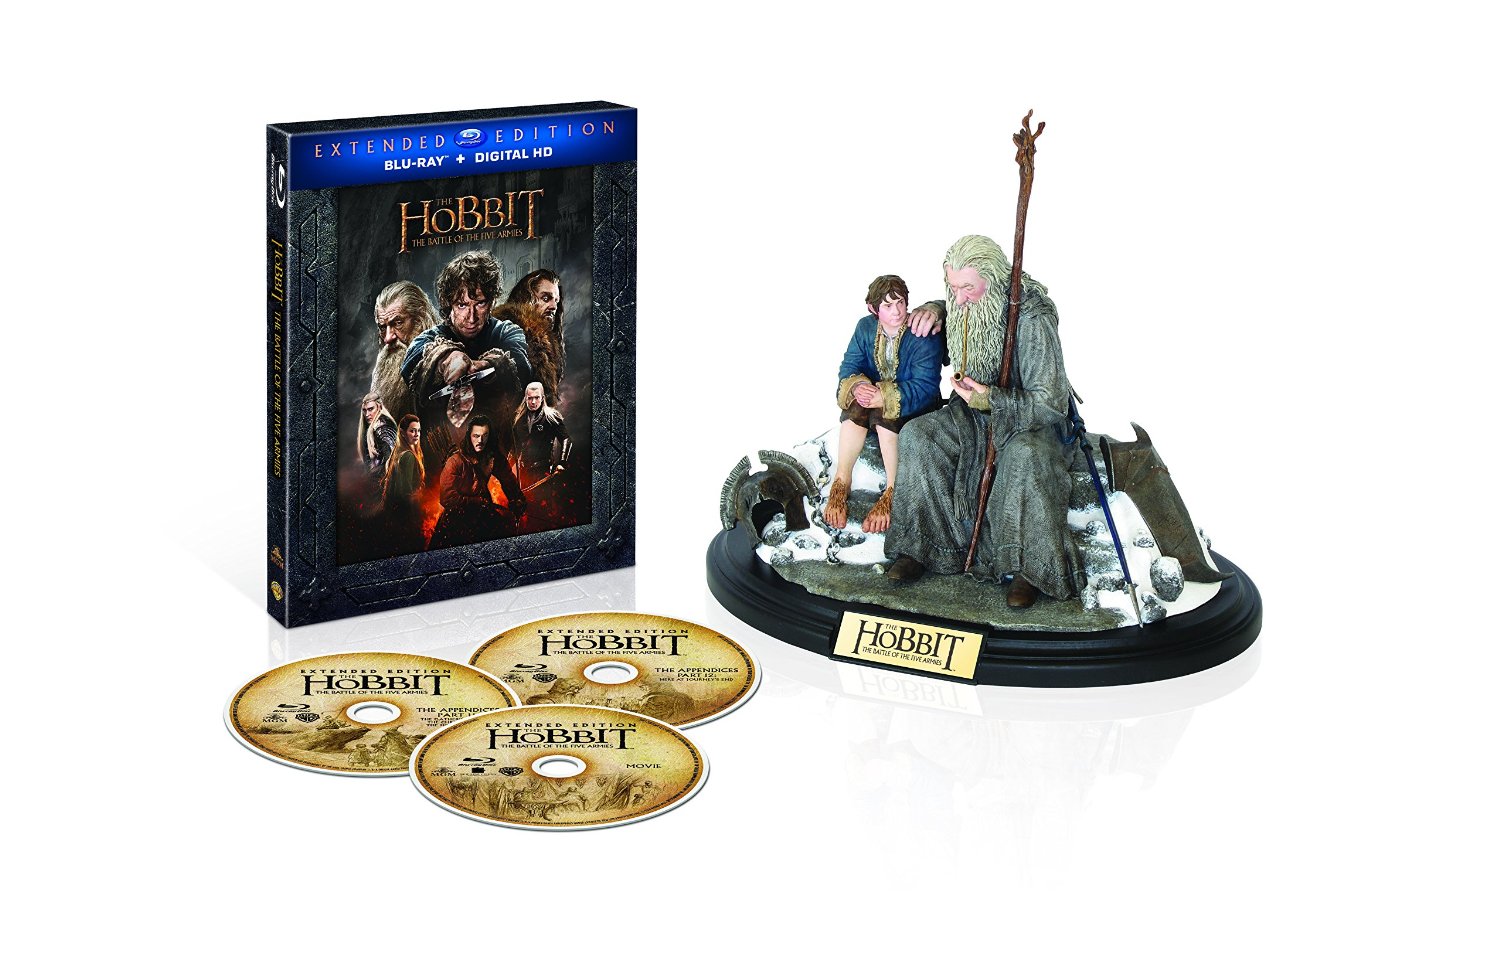 Хоббит и властелин колец хронология. Hobbit Extended Edition фигурка. Фигурки Властелин колец и Хоббит. Хоббит Blu-ray.